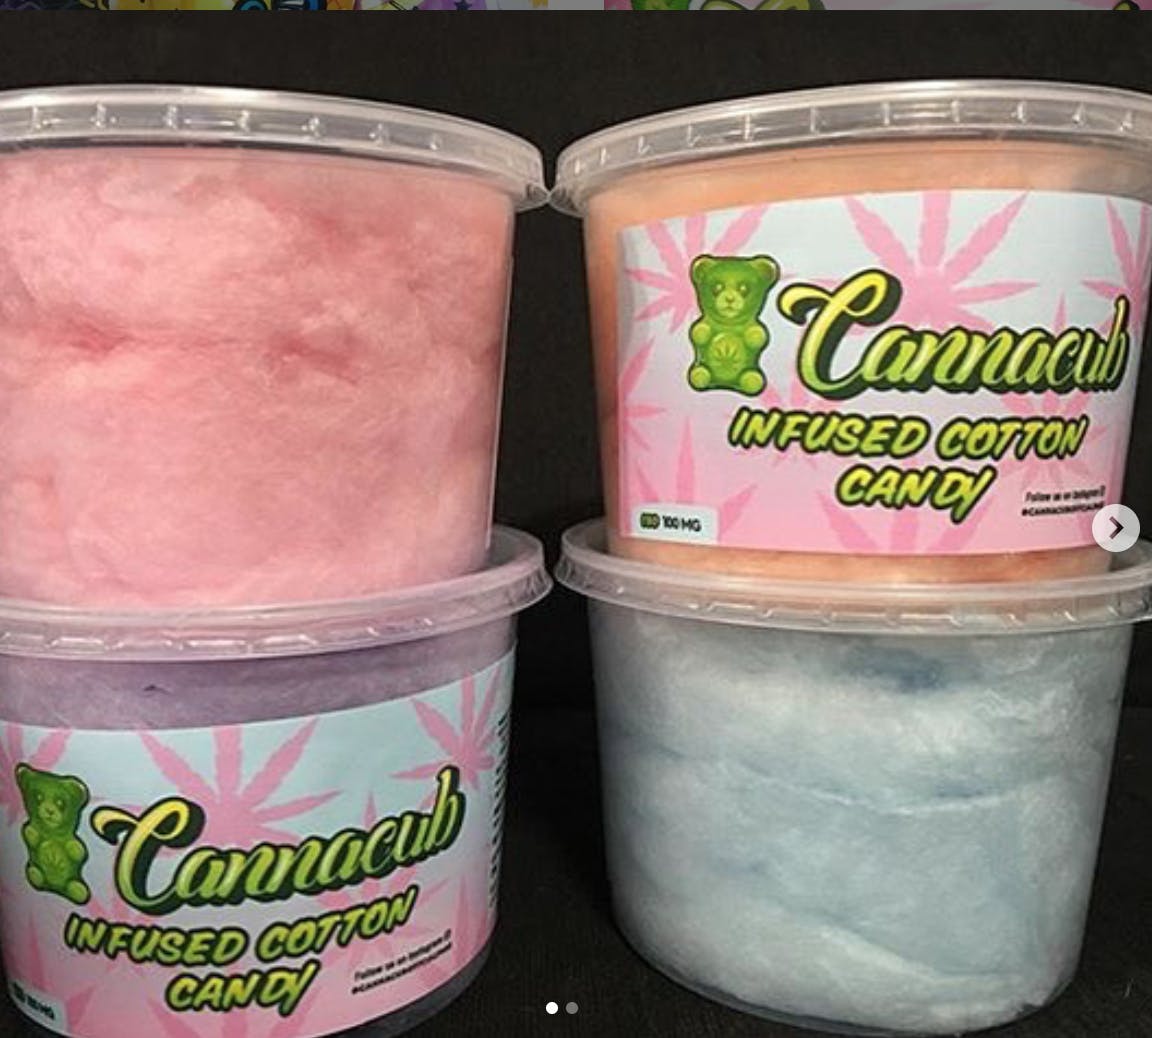 edible-cannacub-cotton-candy